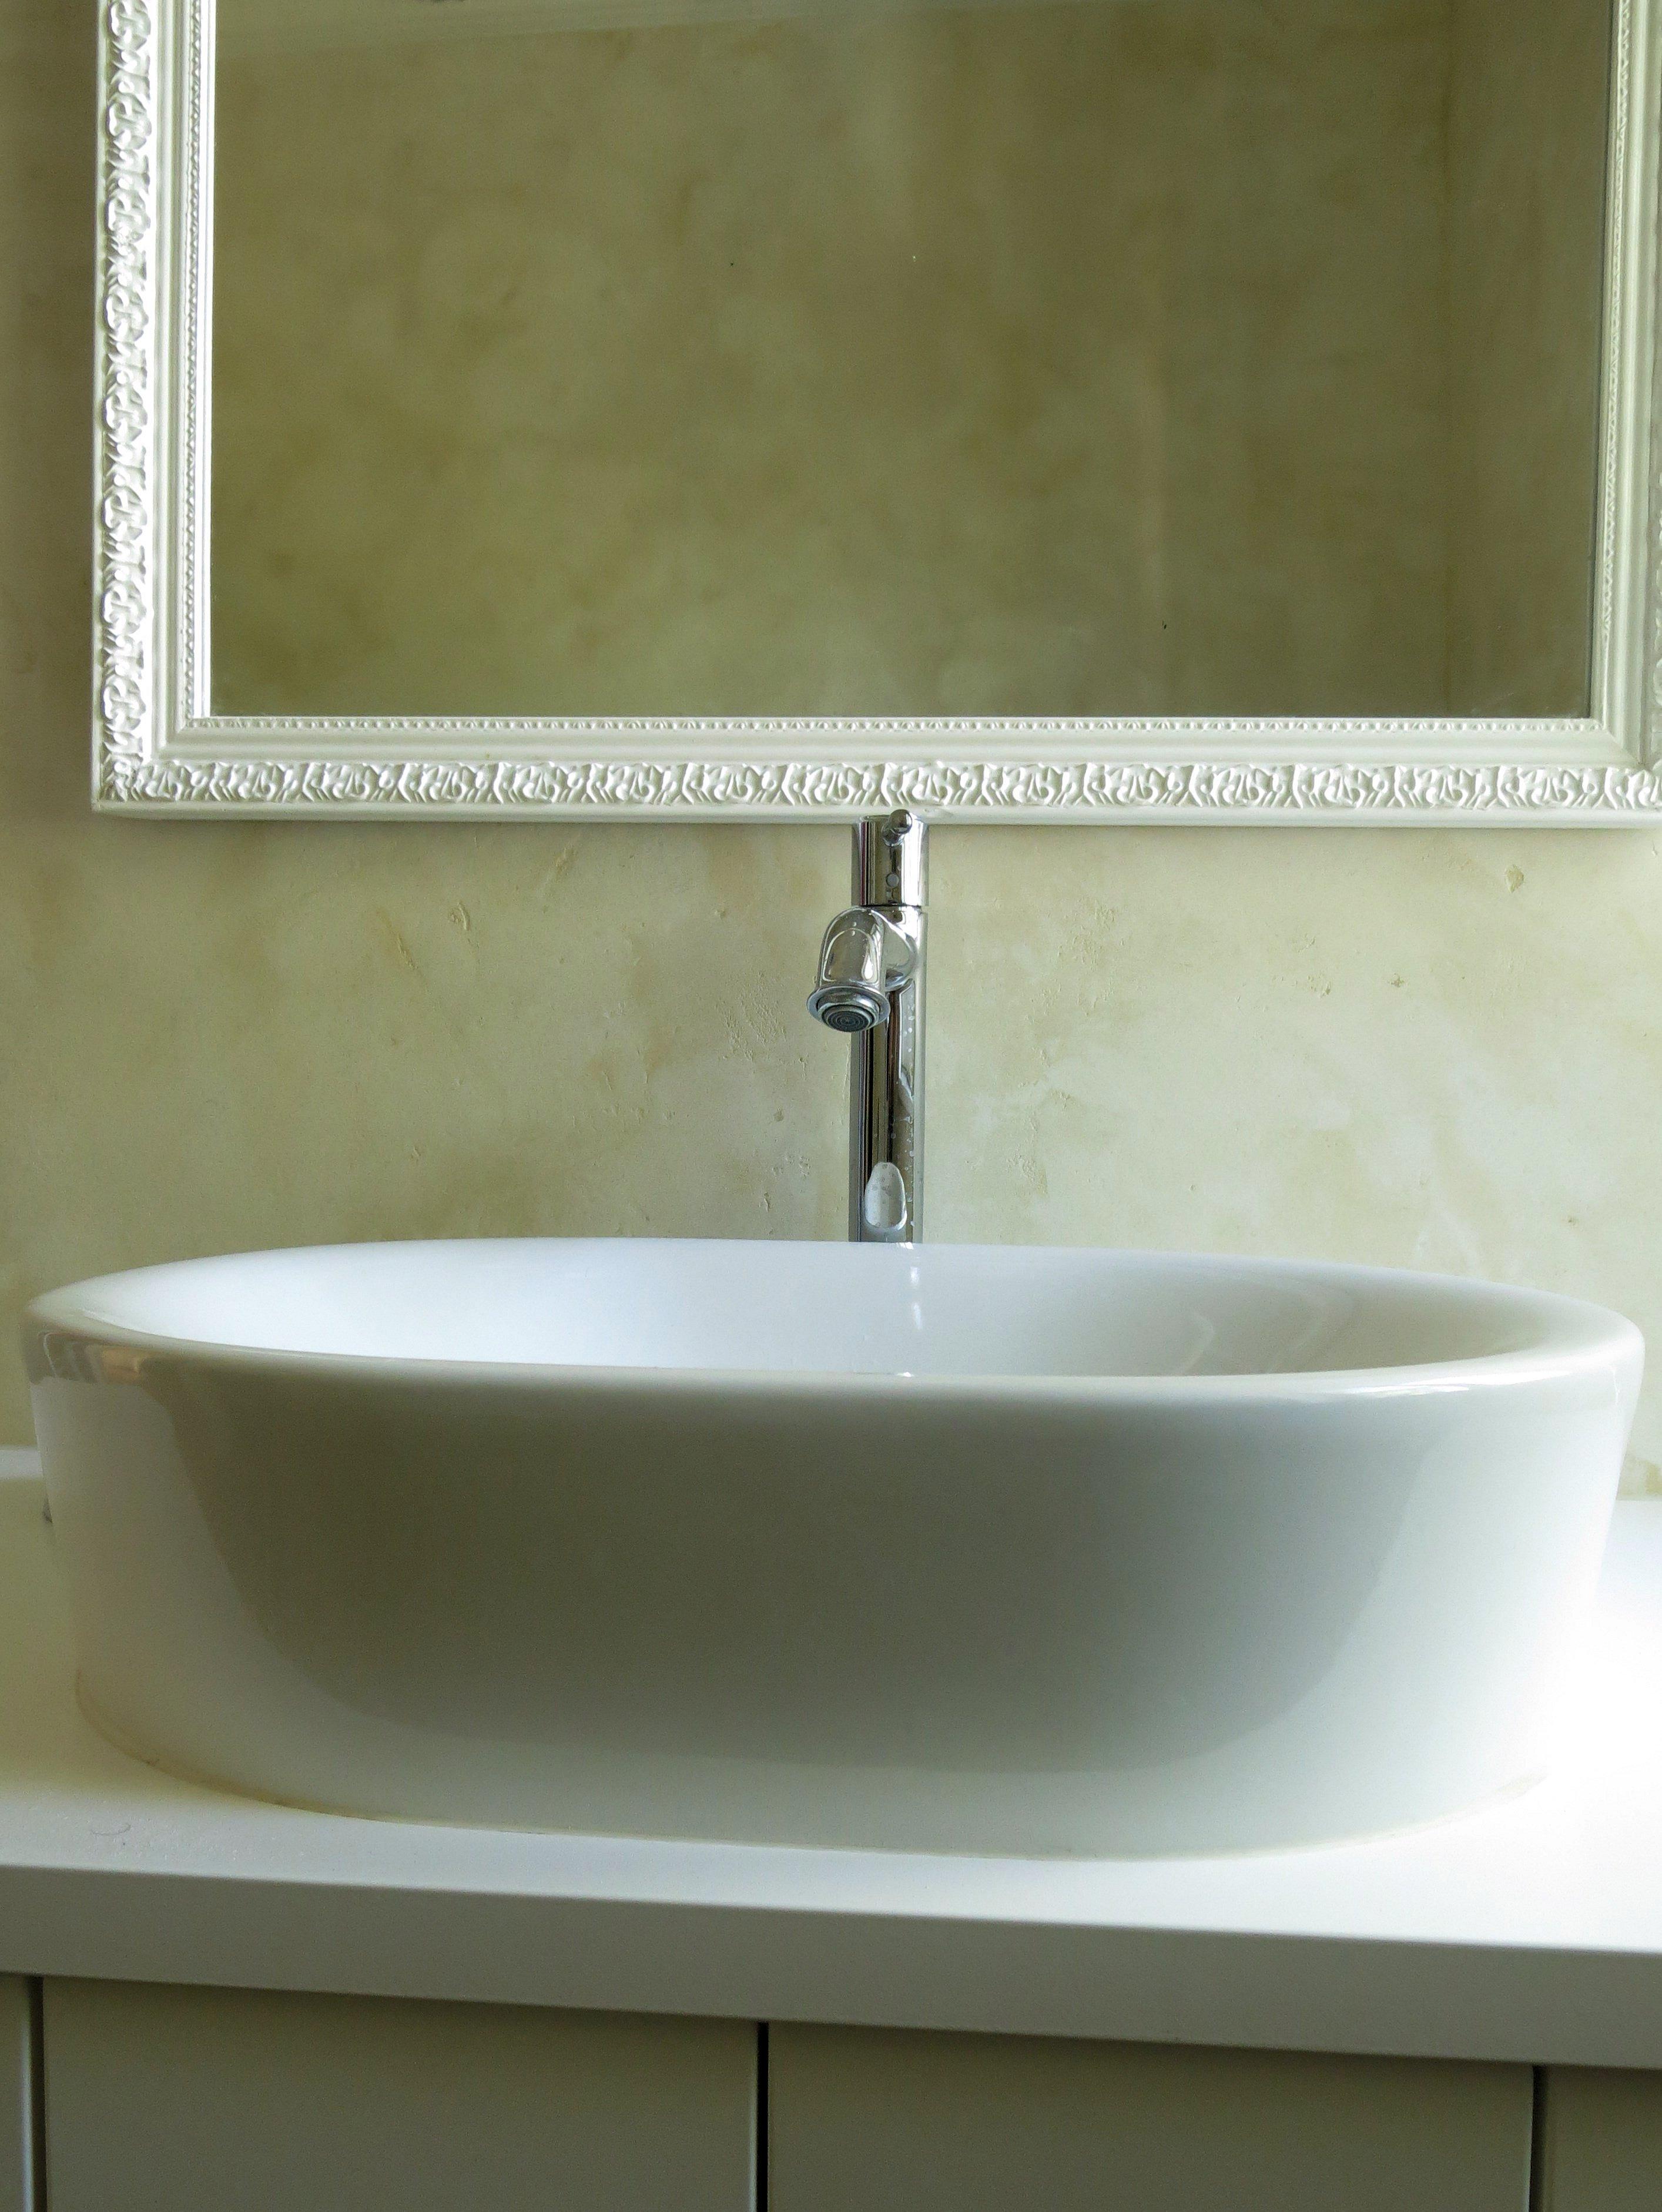 Wunderschönes Badezimmer ohne Fliesen #wandspiegel #marmorboden #grünewandfarbe ©www.wandmanufaktur.de